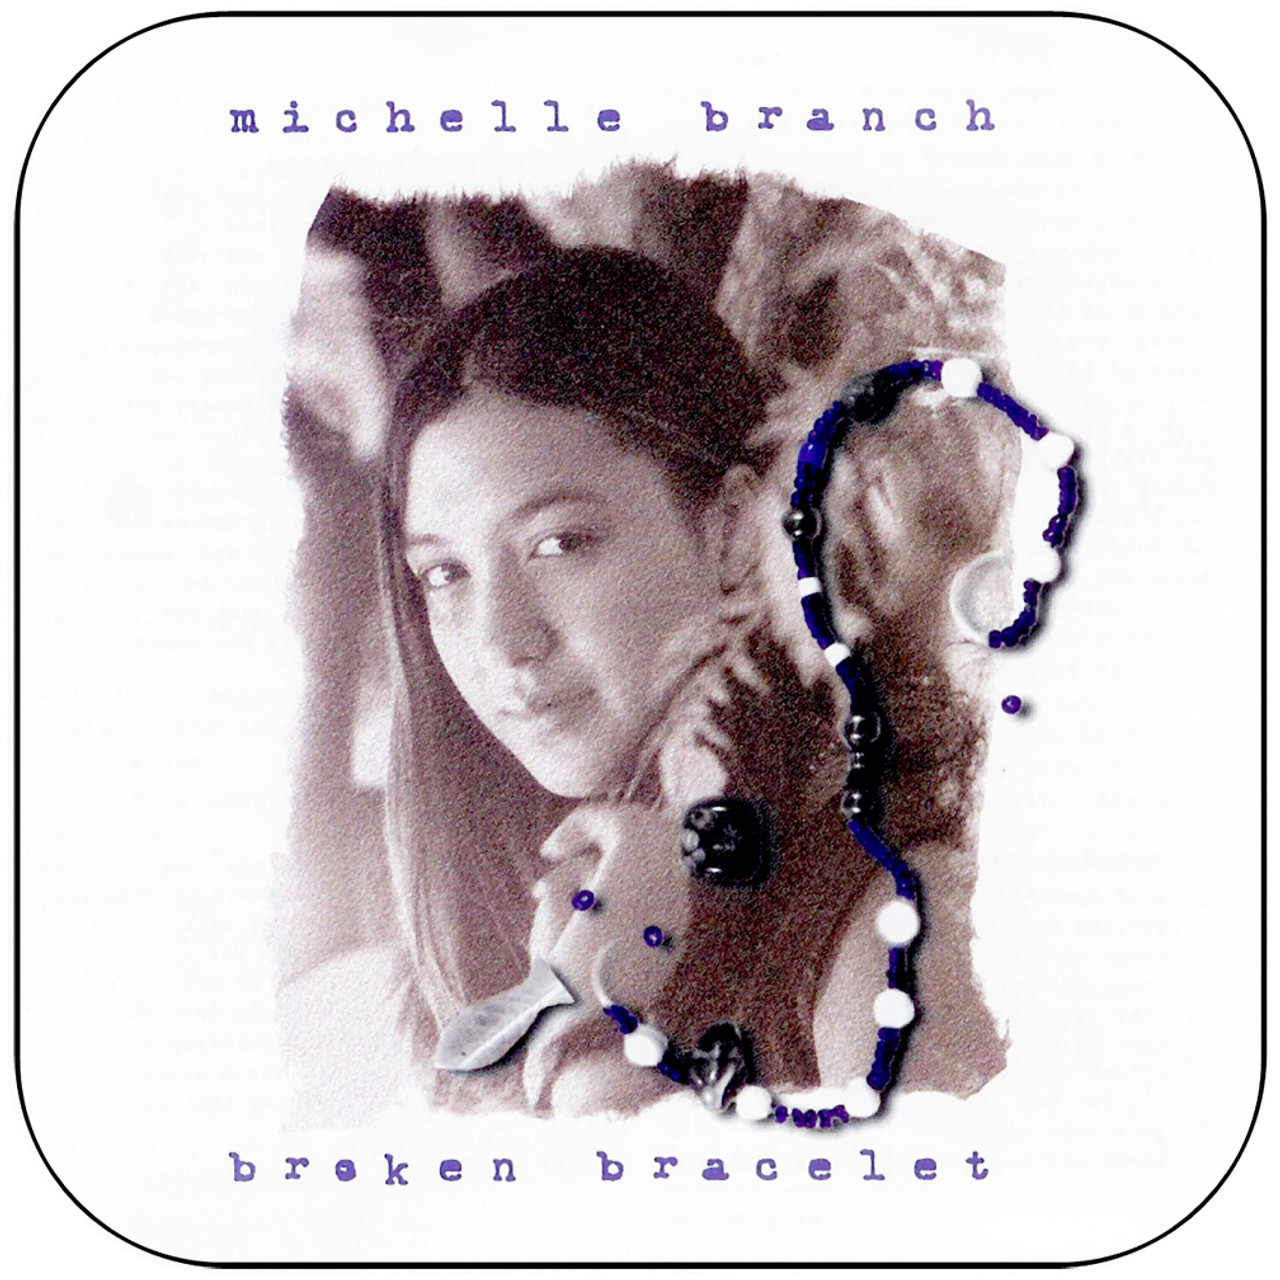 Michelle Branch - Washing Machine (Broken Bracelet) - YouTube